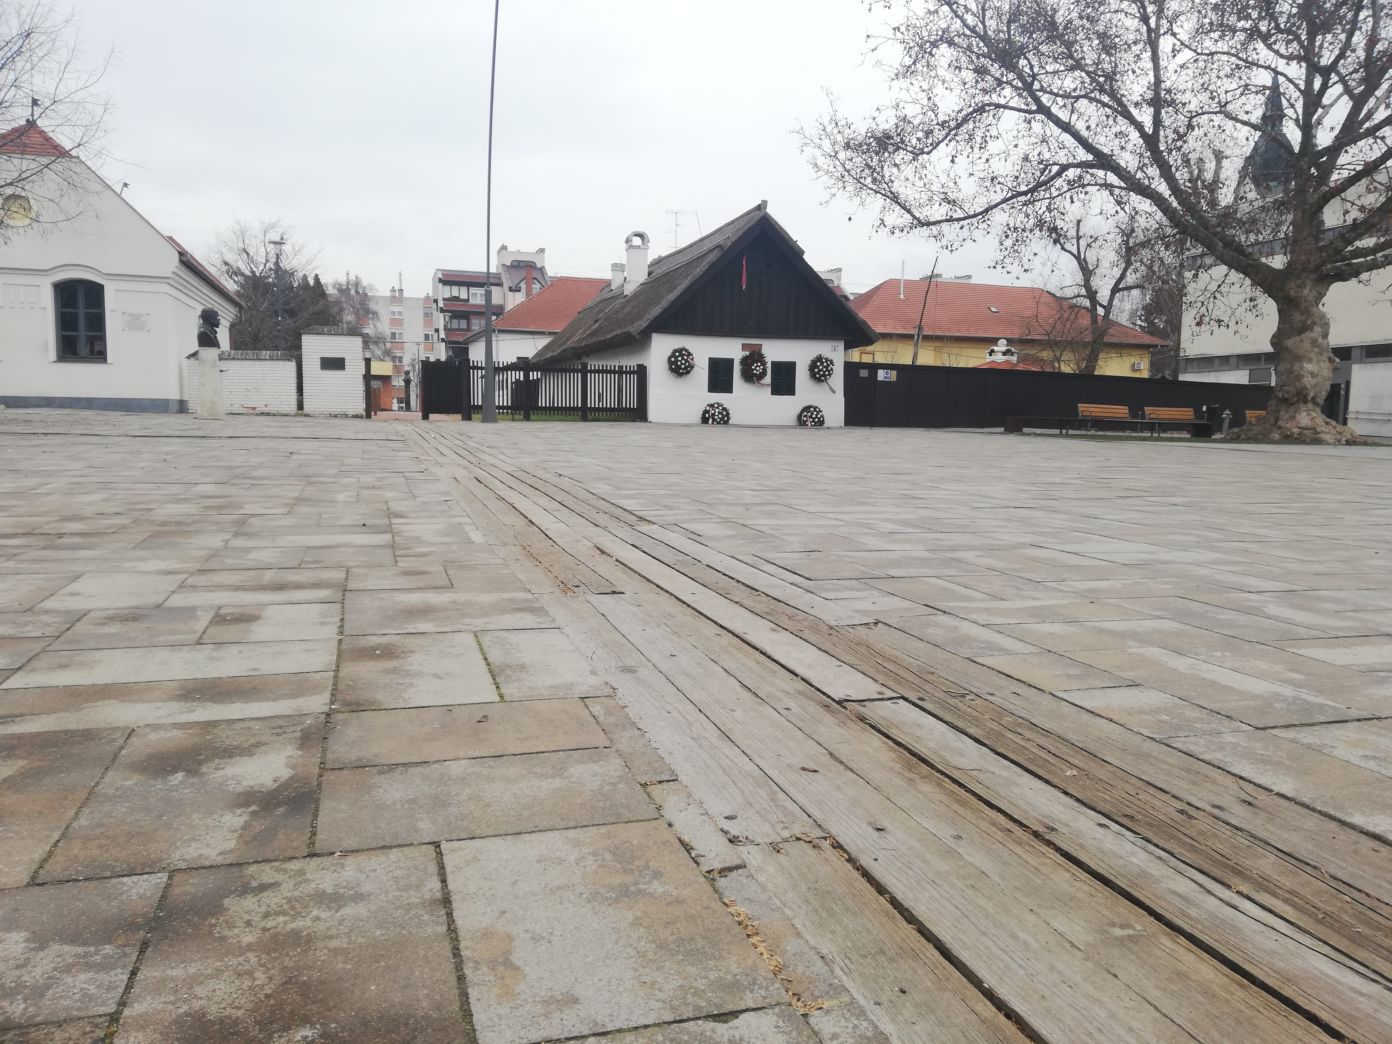 Várostörténeti túraútvonalat alakítanak ki Kiskőrös központjában – megújul a Petőfi vonal is